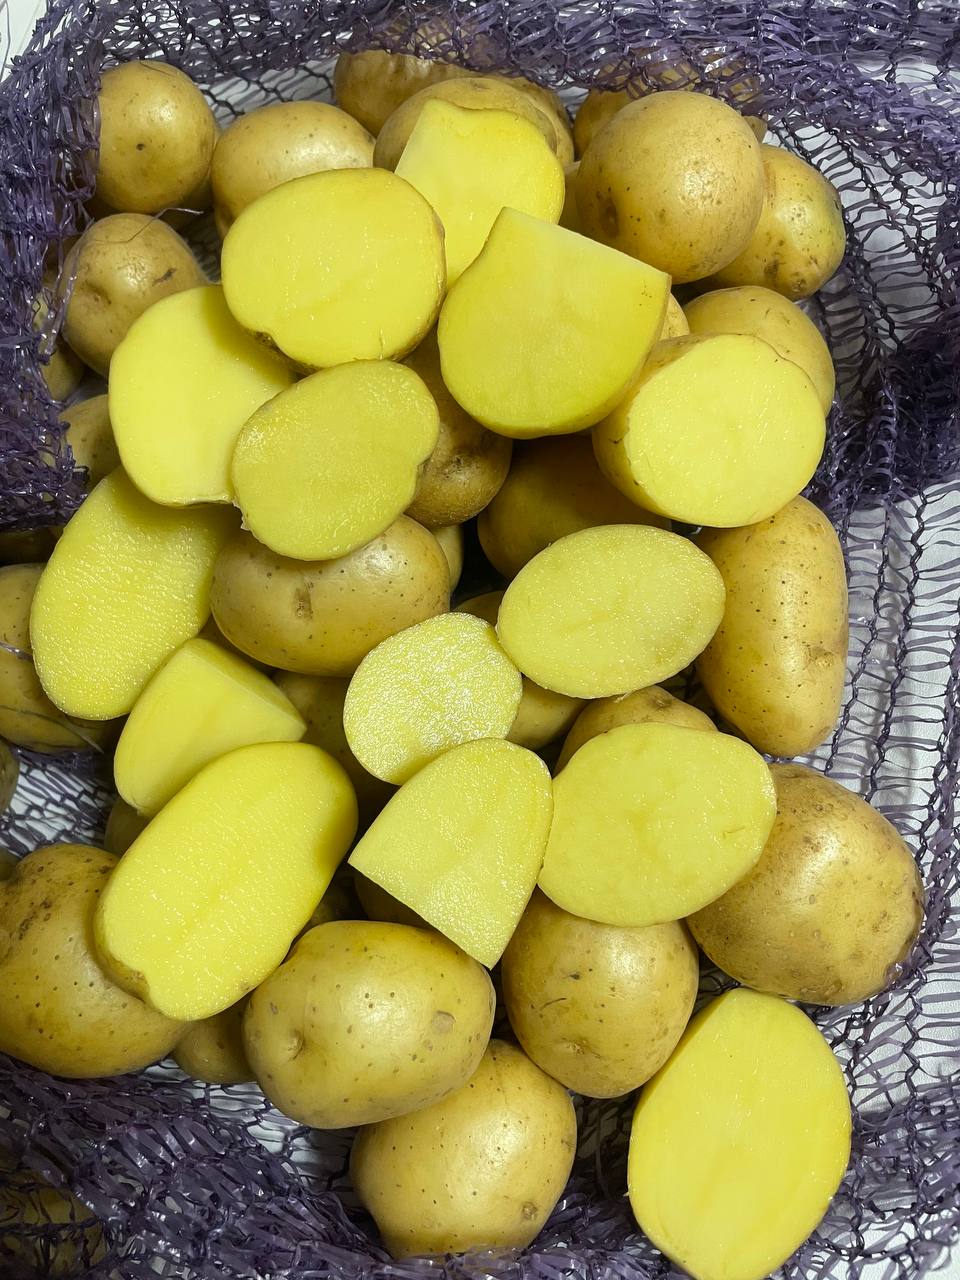 Семенной картофель Коломбо